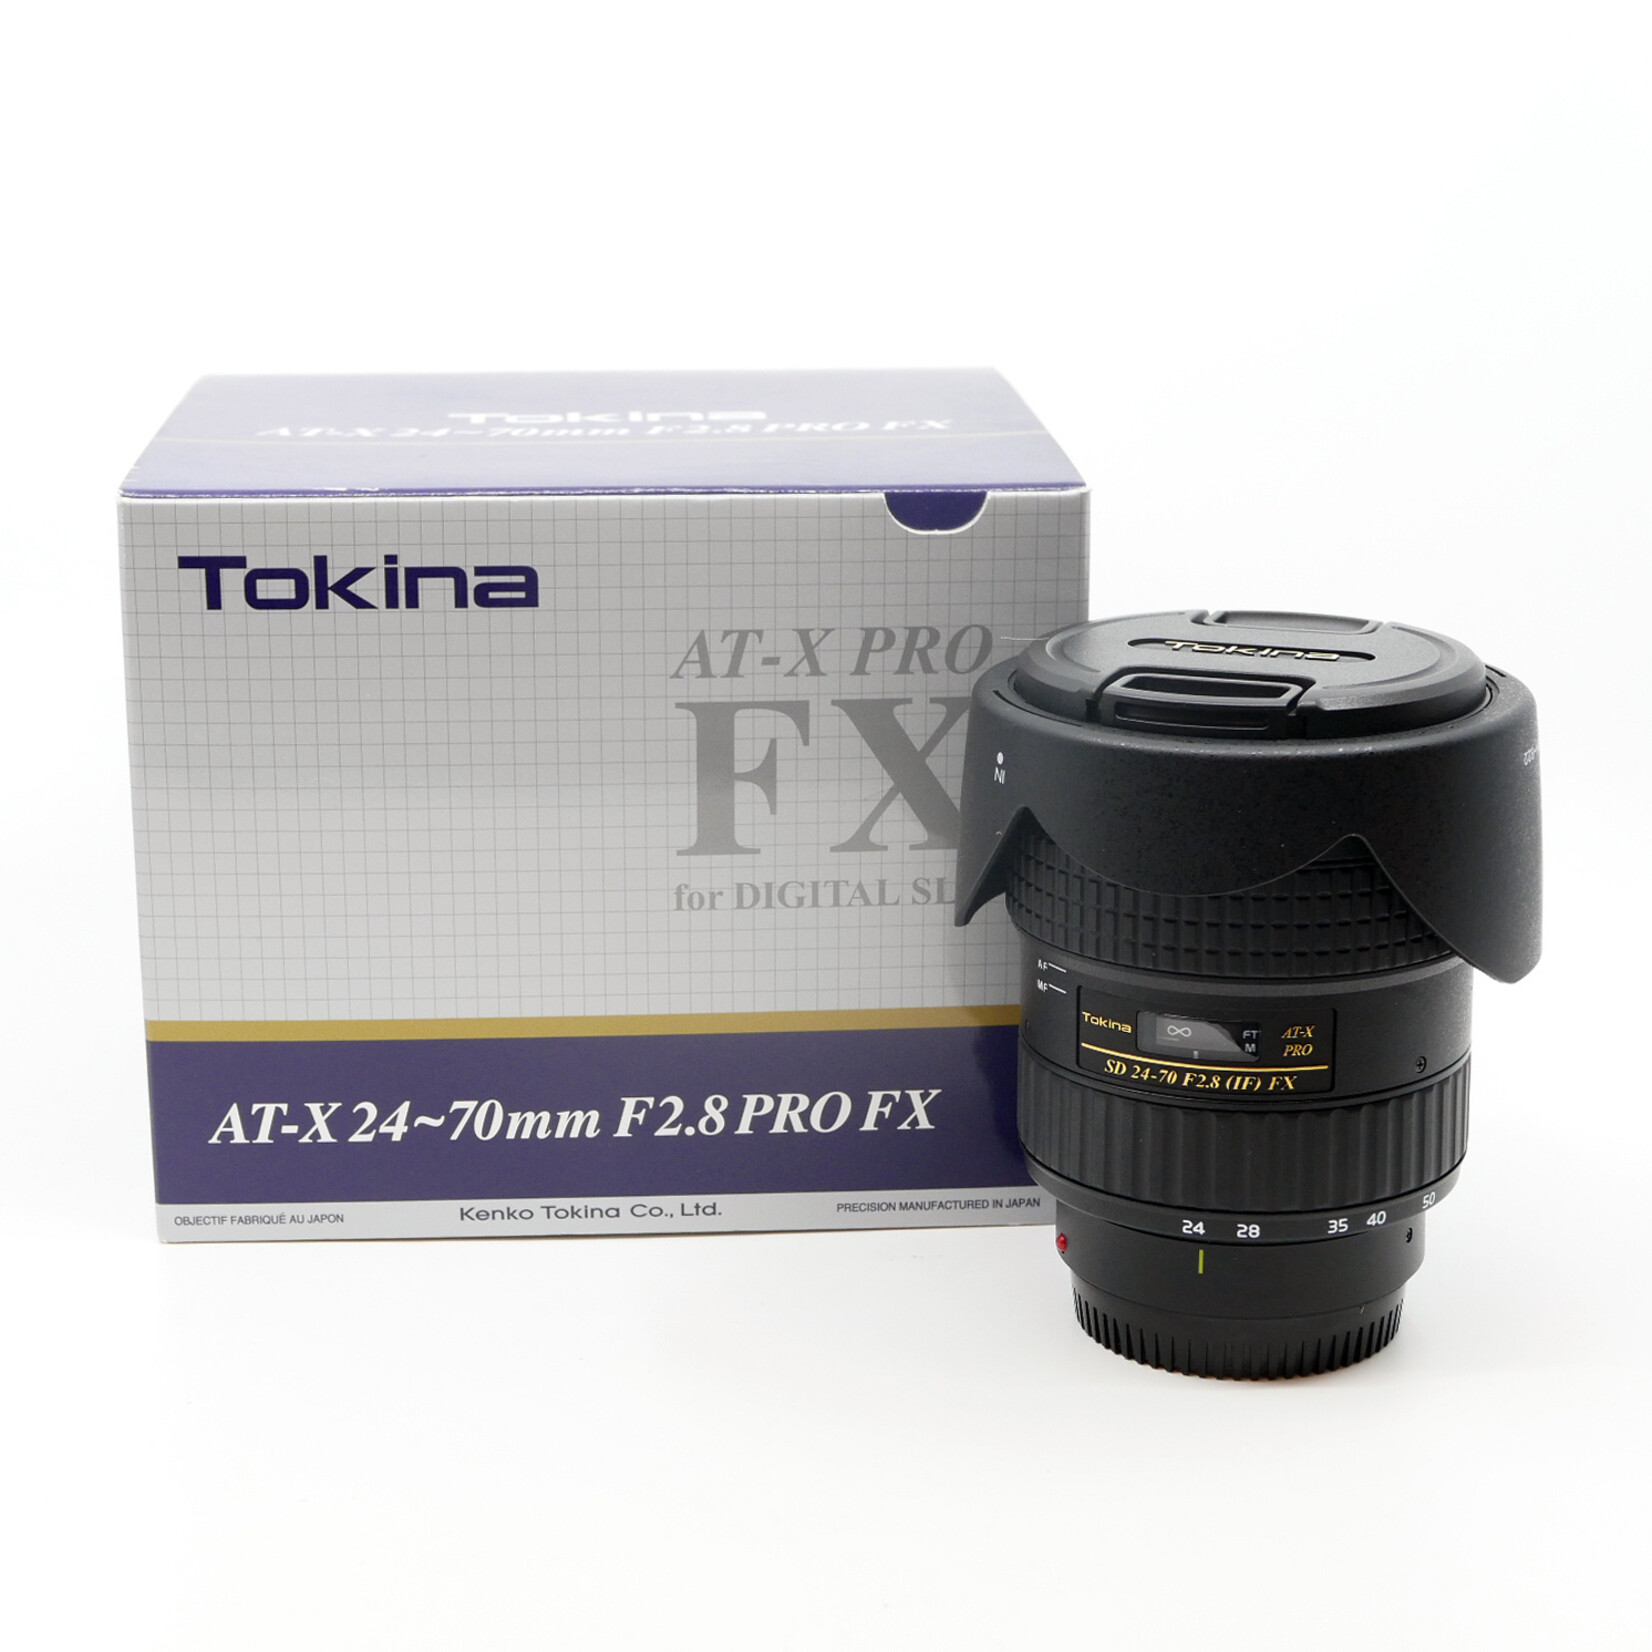 Tokina Tokina AT-X 24-70mm F2.8 PRO FX Canon